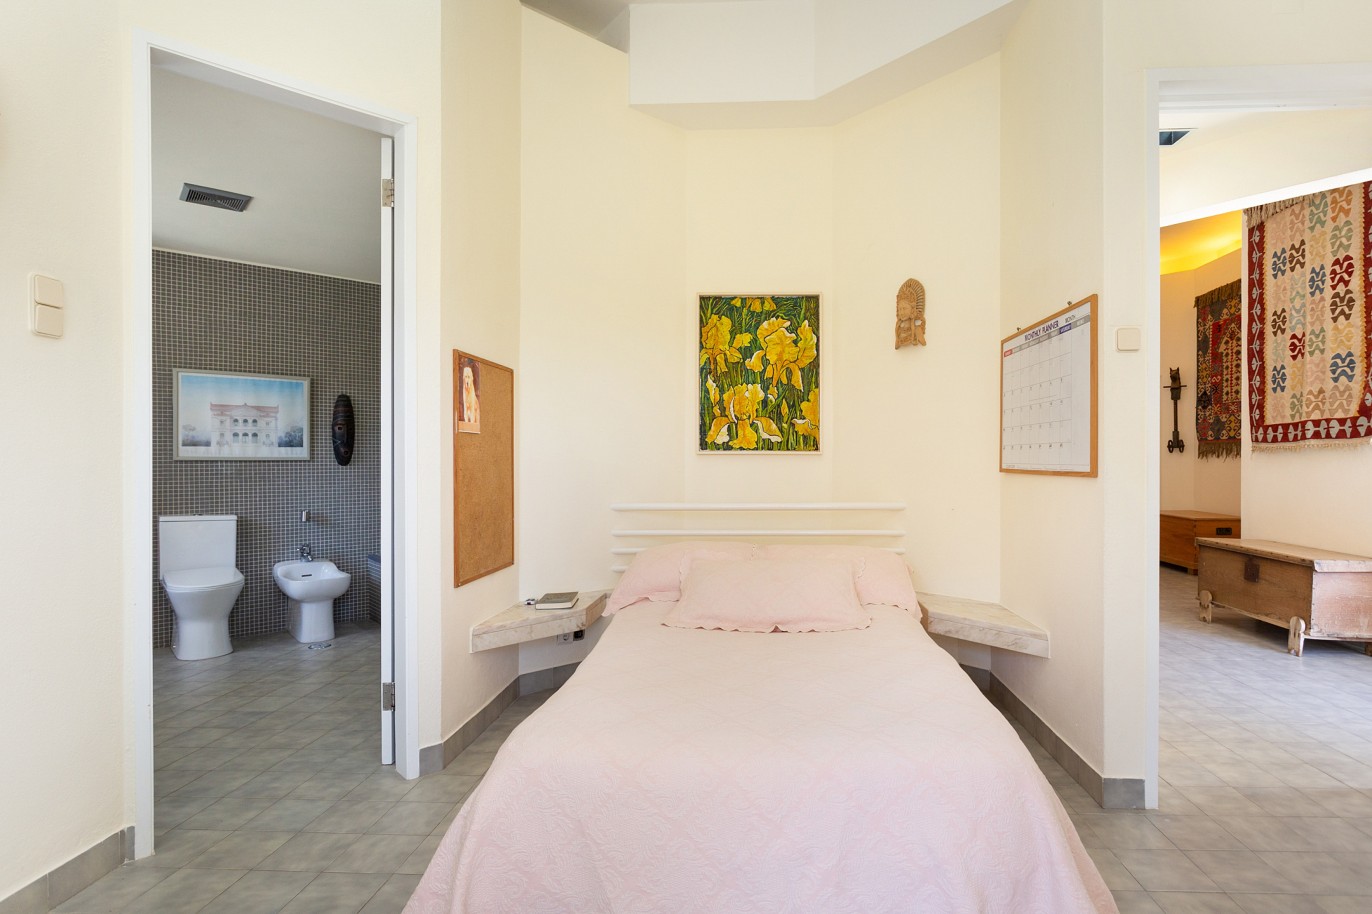 5 Dormitorios Villa con piscina, en venta en Caldas de Mochique, Algarve_220541